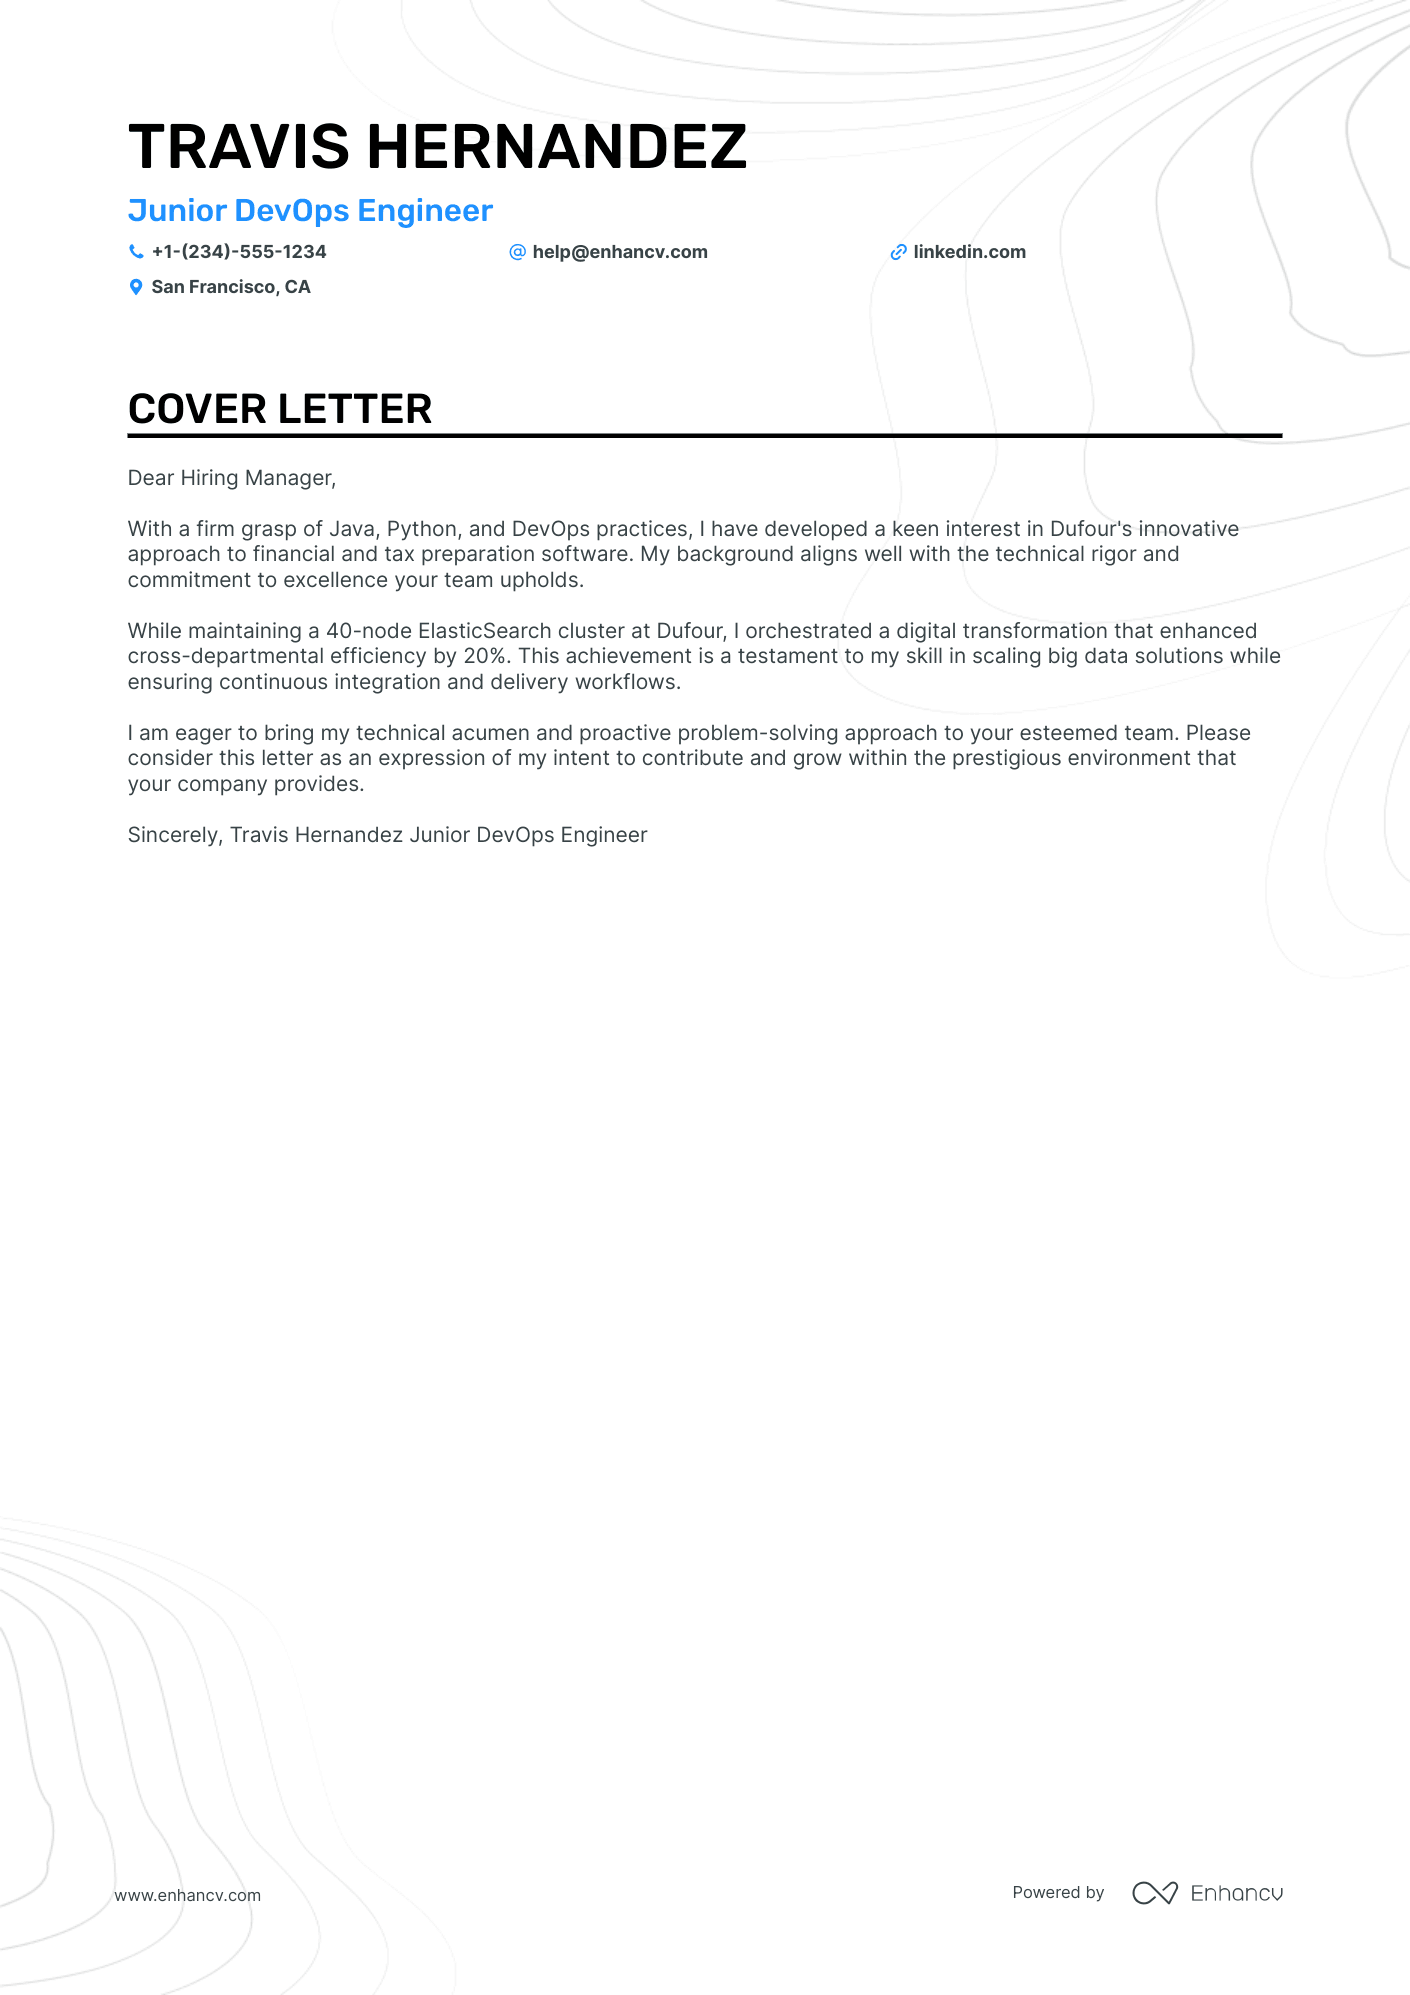 cover letter for junior devops engineer